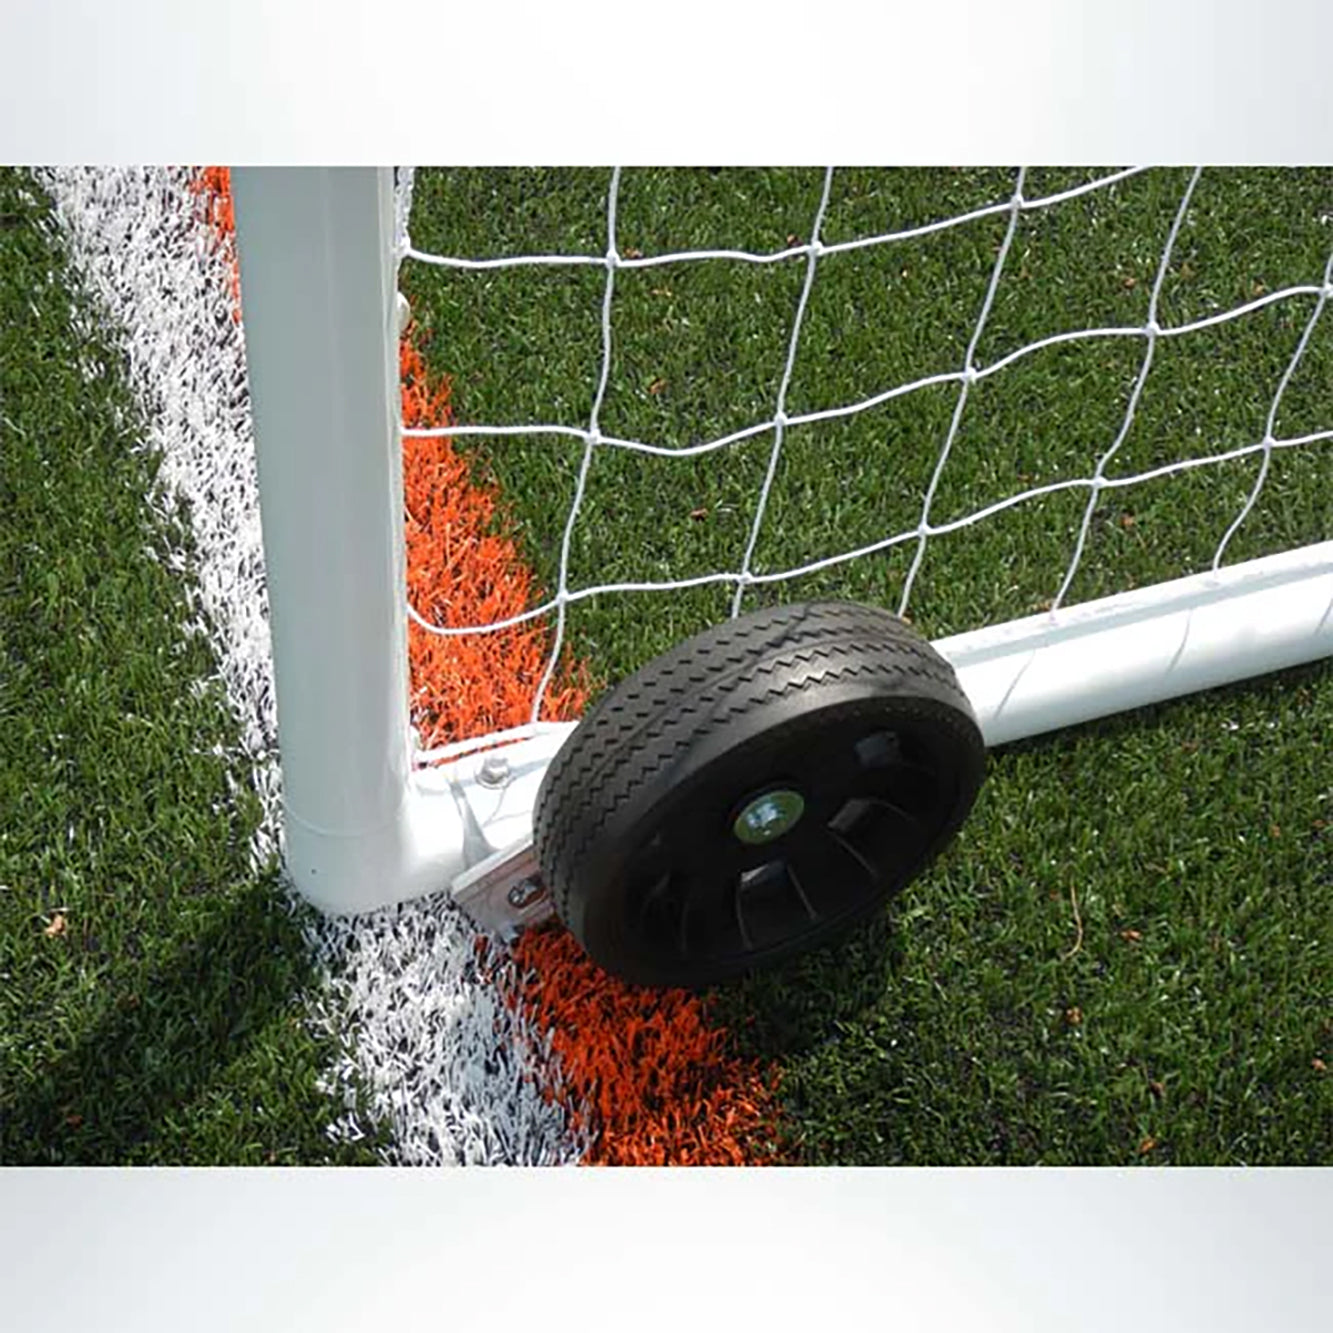 Club Series Soccer Goal - 6.5x12